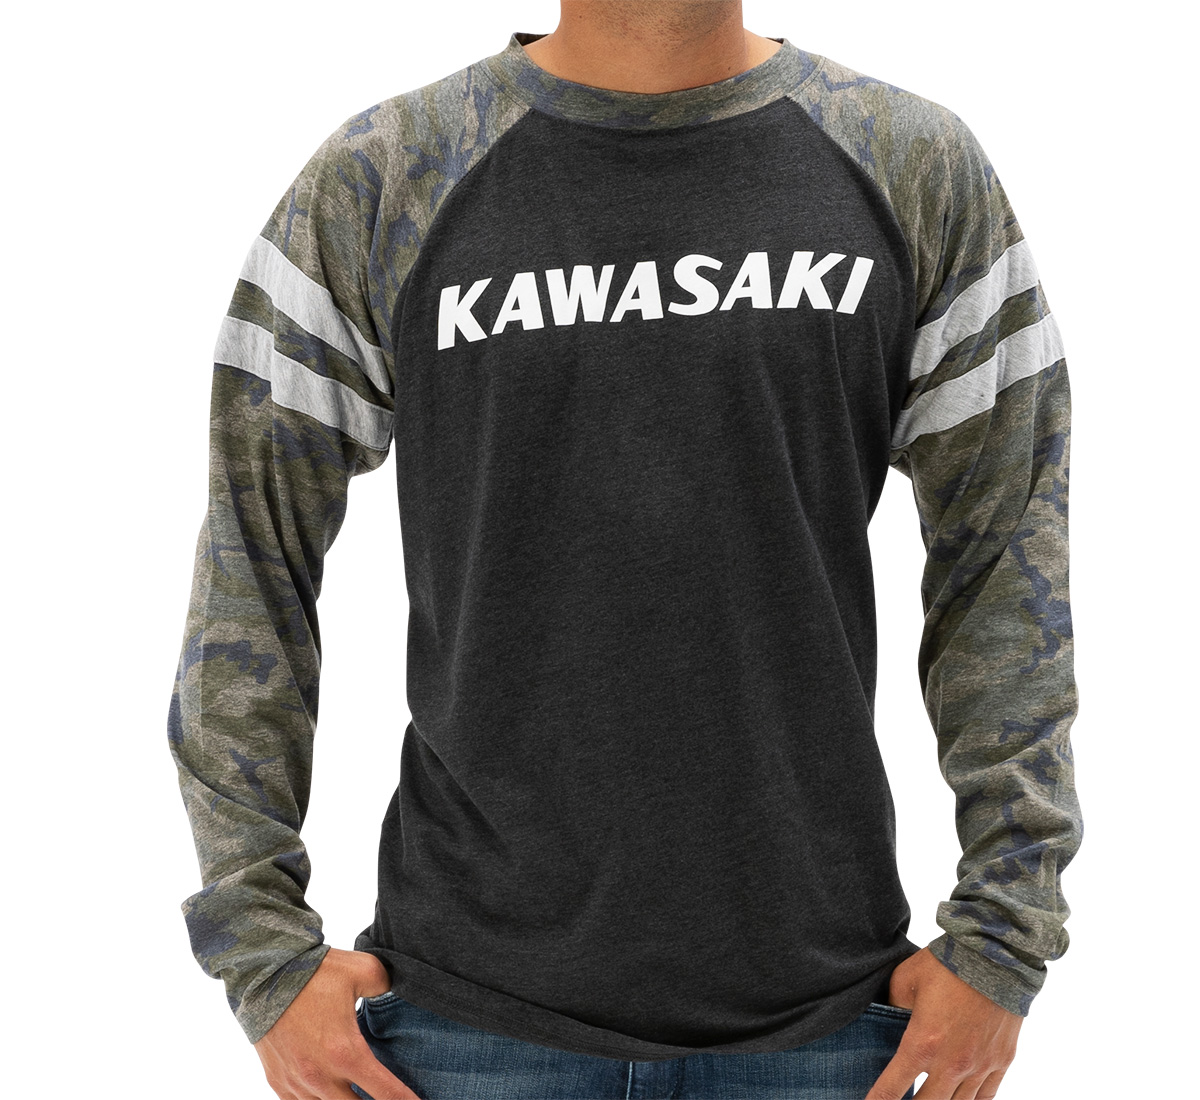 Official Kawasaki Apparel | Ride In 